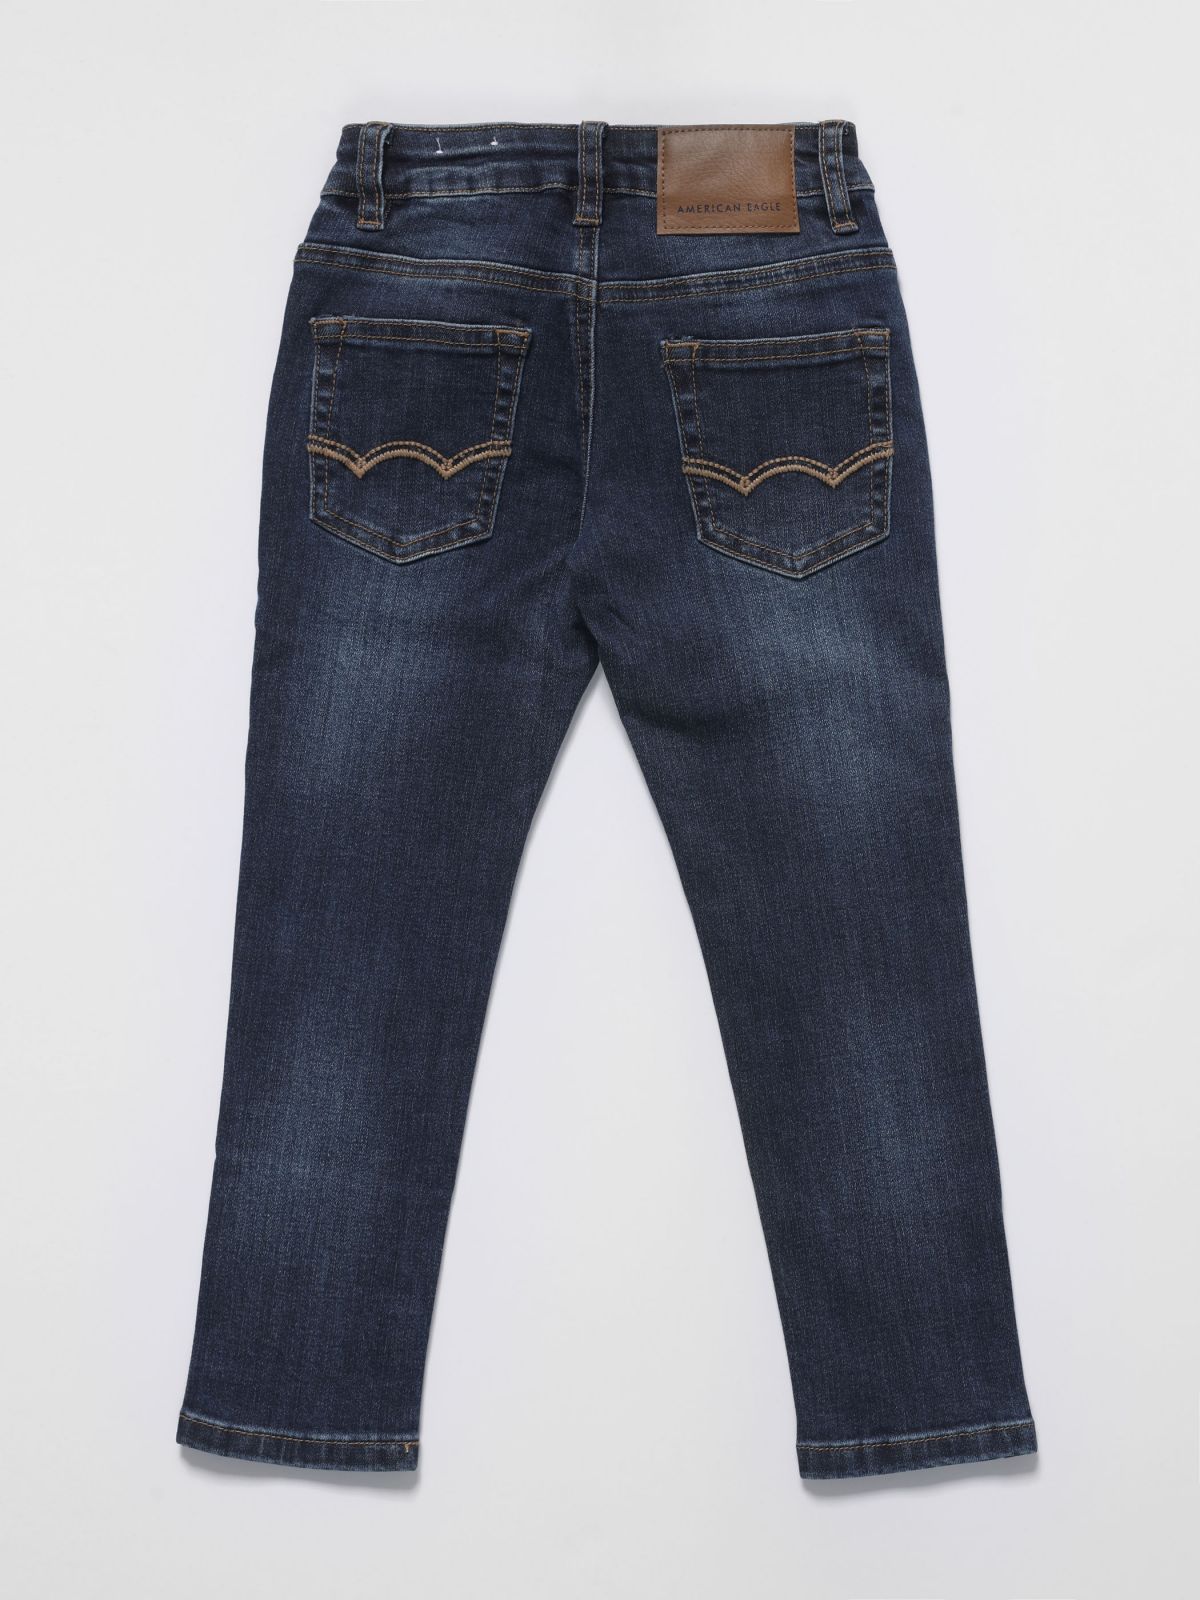  ג'ינס סקיני בשטיפה כהה / בנים של AMERICAN EAGLE